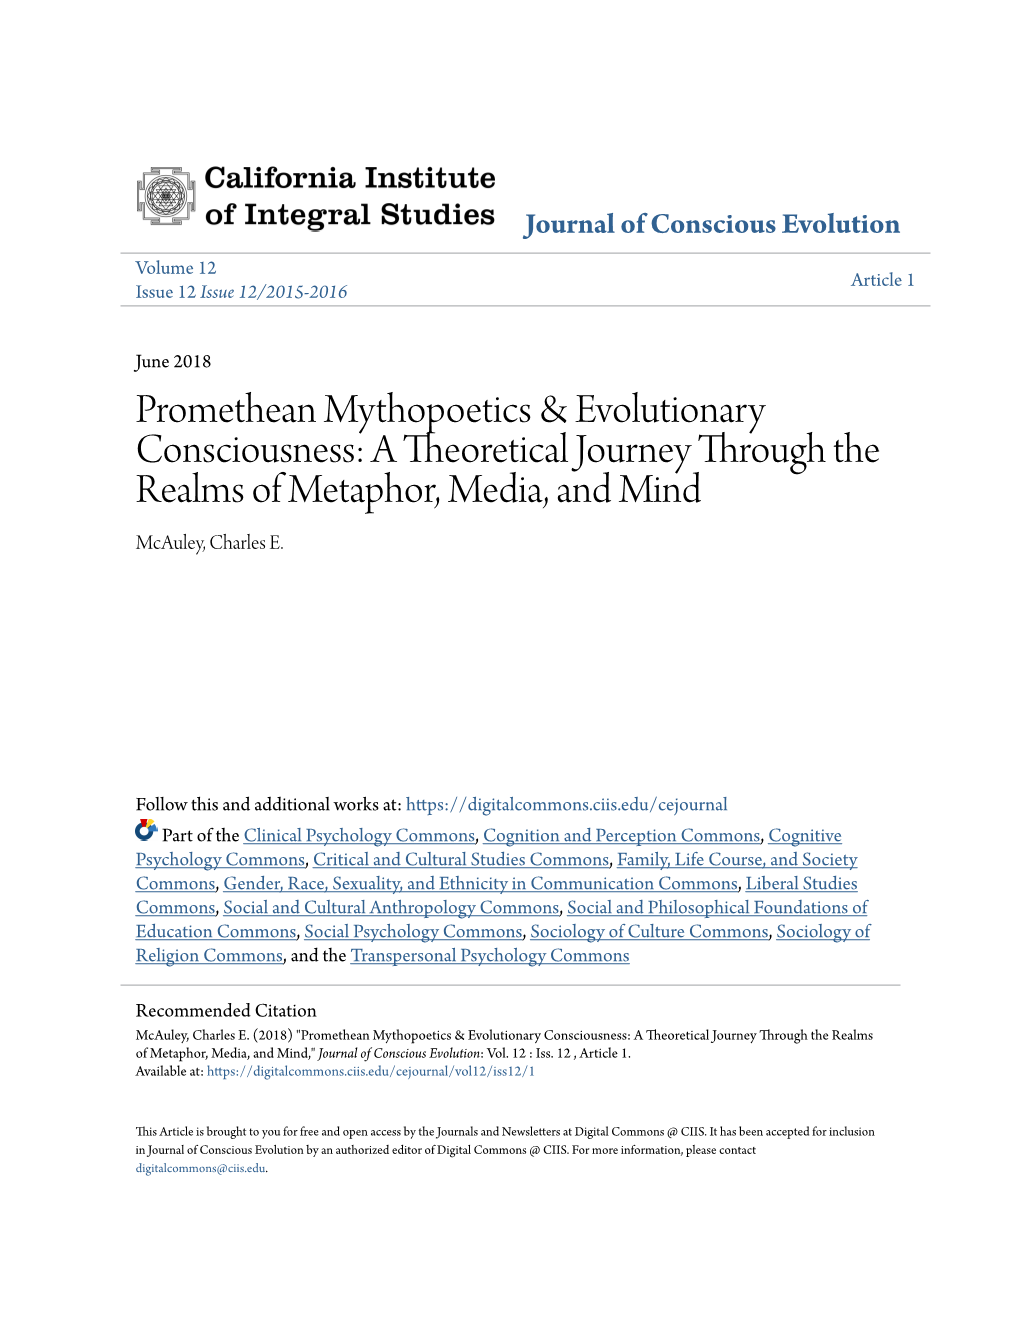 Promethean Mythopoetics & Evolutionary Consciousness: A